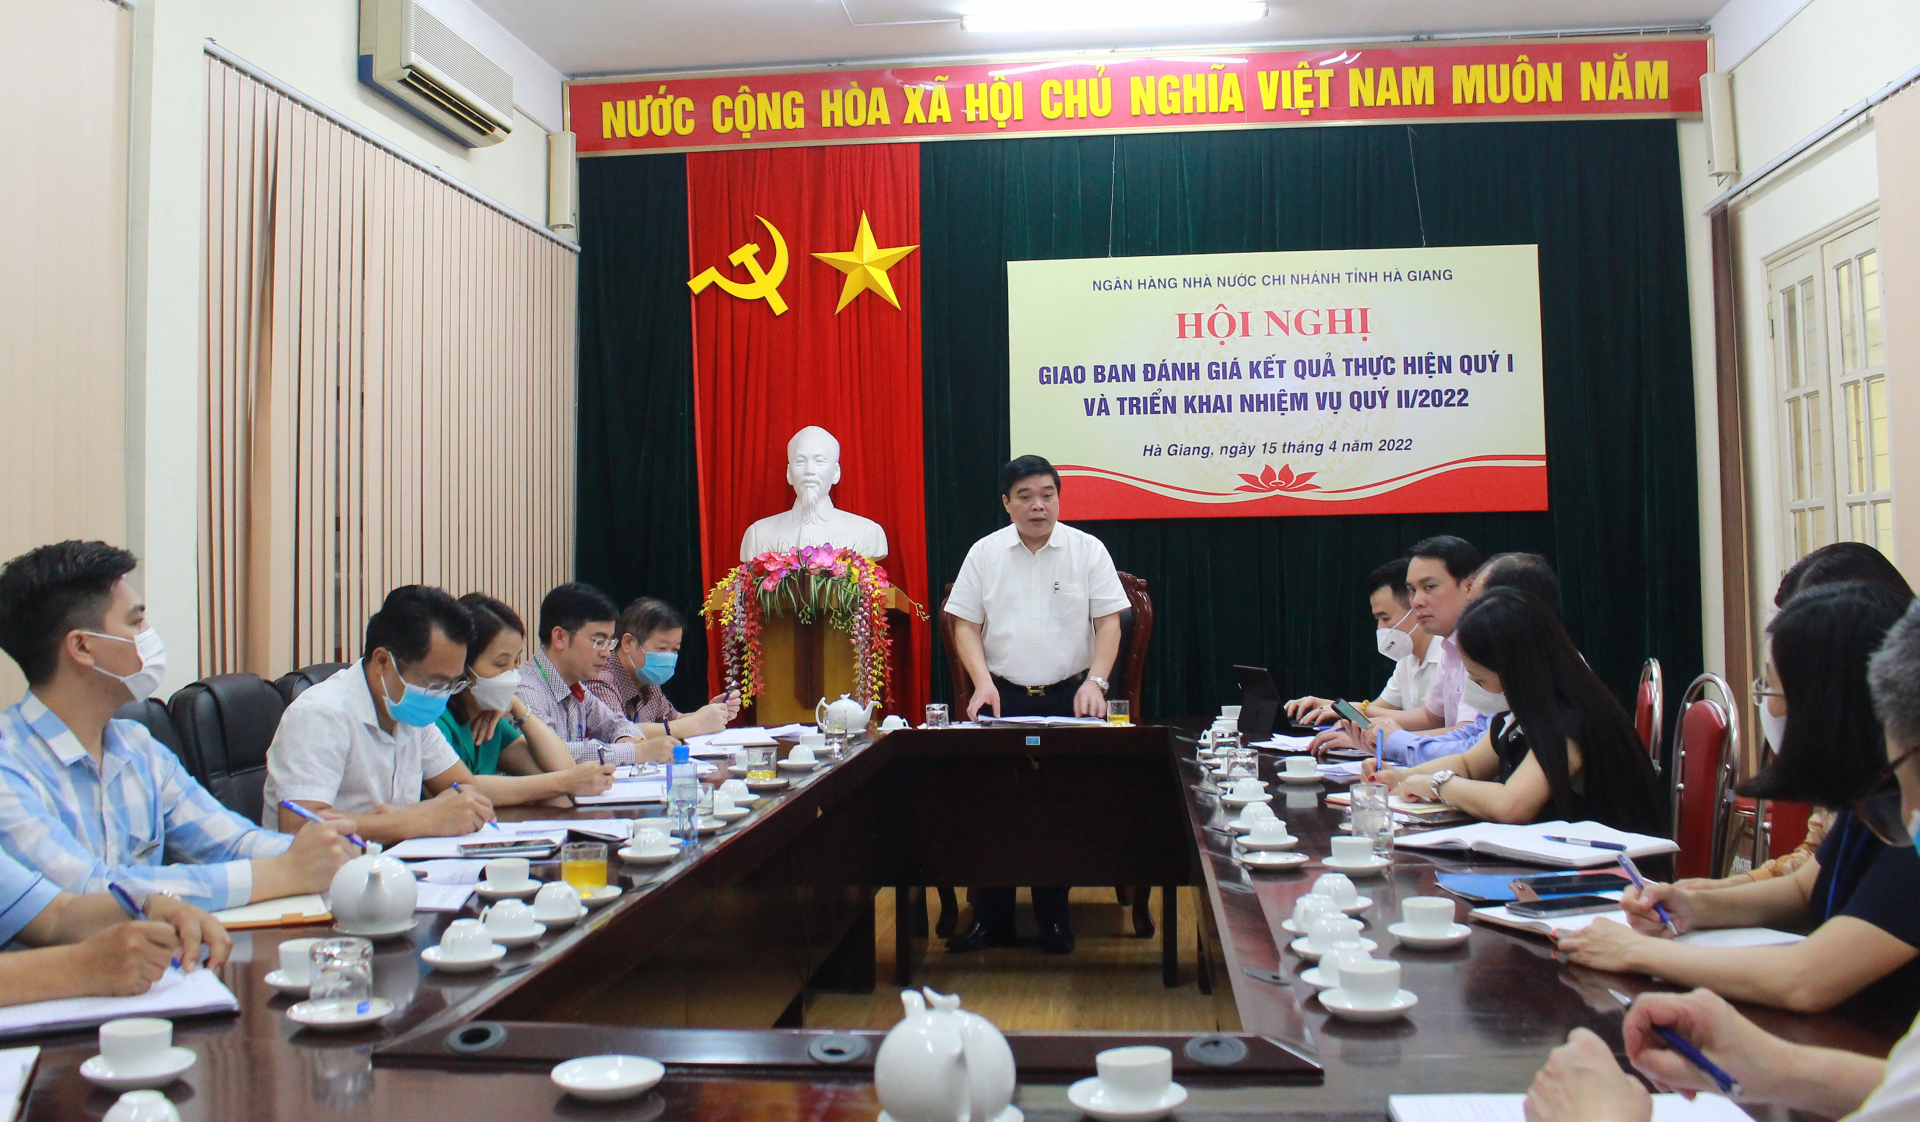 Đồng chí Nguyễn Ngọc Hải, Giám đốc NHNN Chi nhánh tỉnh Hà Giang kết luận hội nghị
